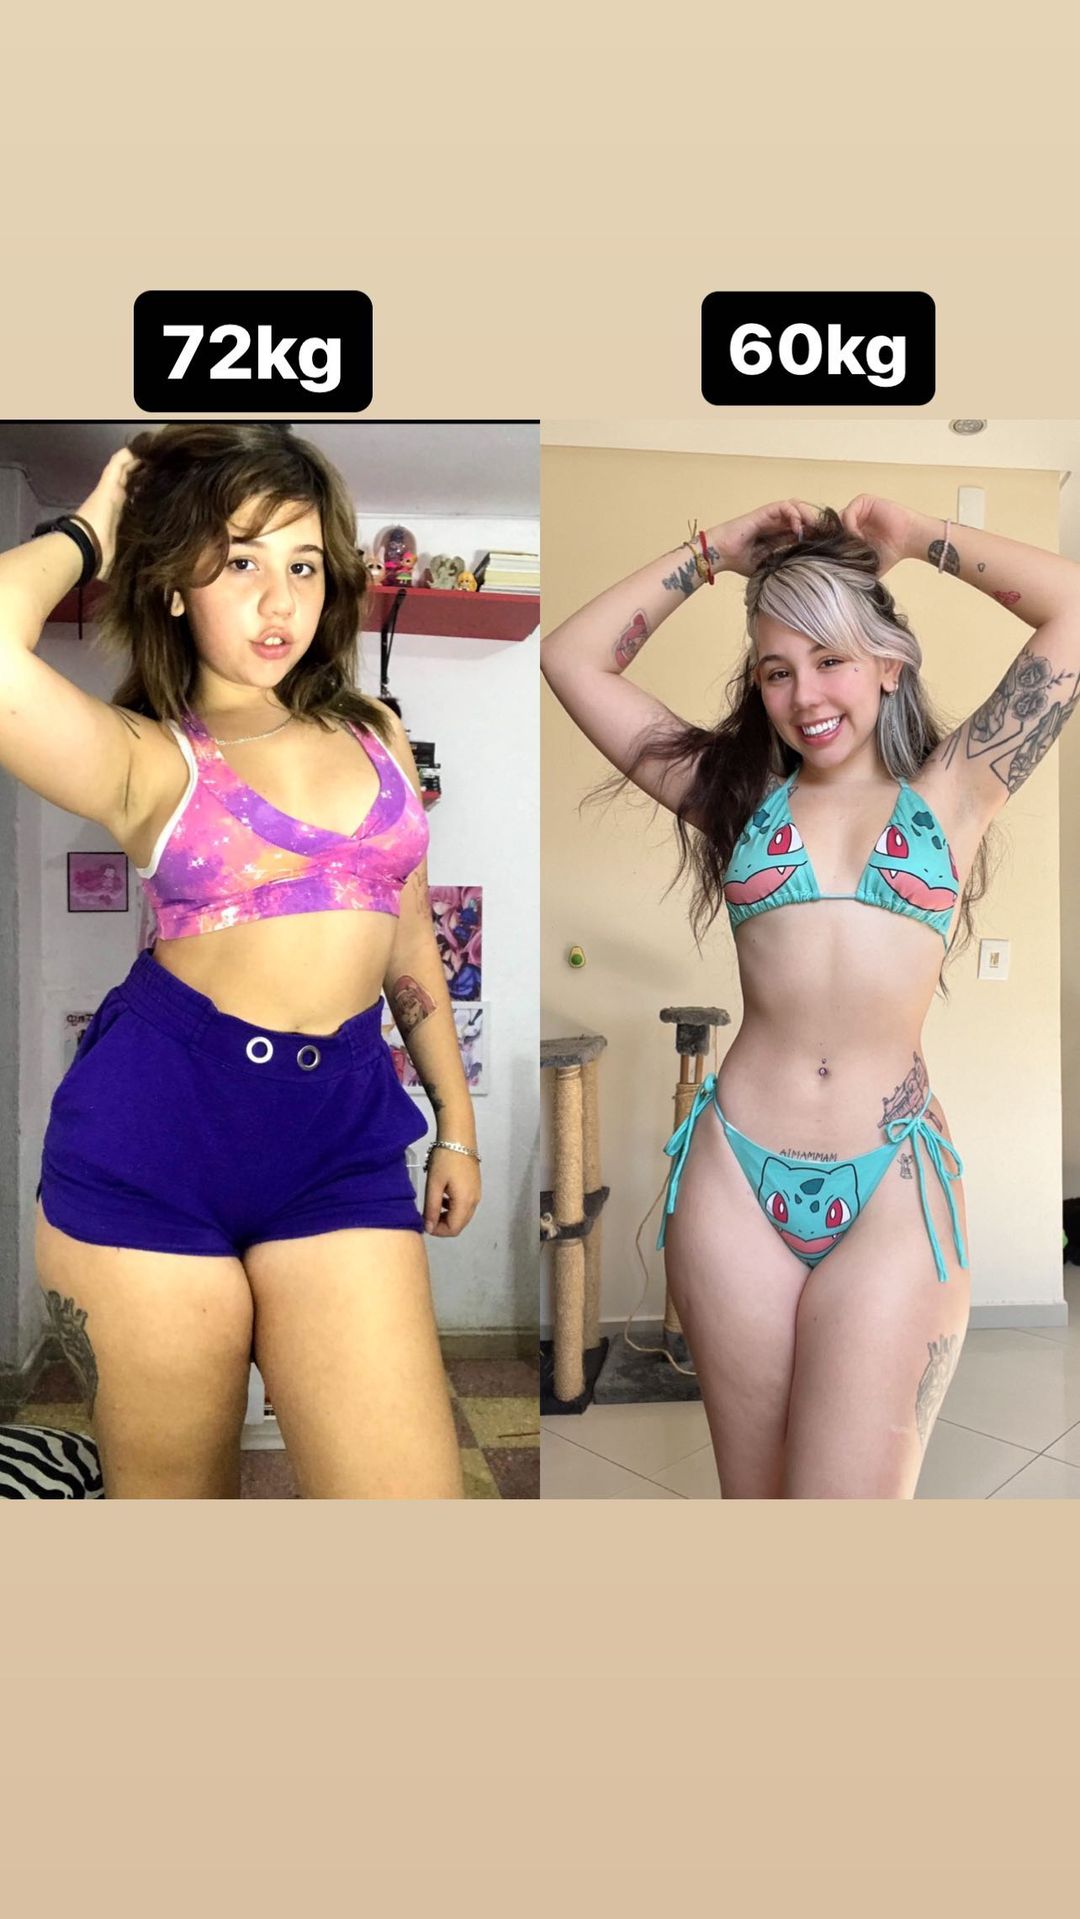 Kinechan mostrou antes e depois de eliminar peso - Foto: Reprodução/ Instagram@kinechan2.0